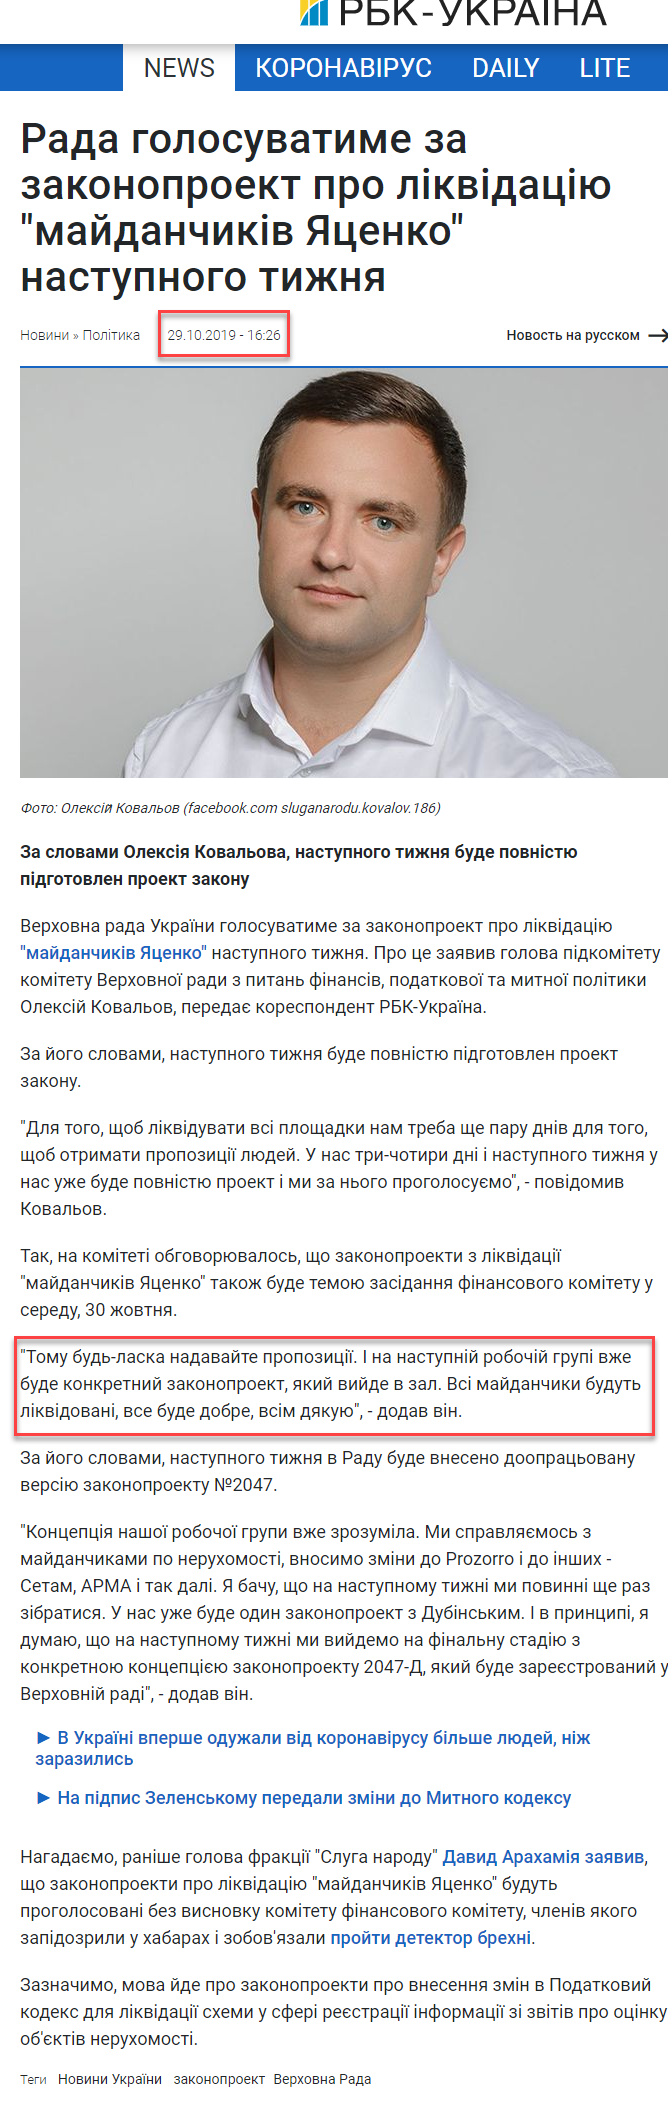 https://www.rbc.ua/ukr/news/rada-budet-golosovat-zakonoproekt-likvidatsii-1572359197.html